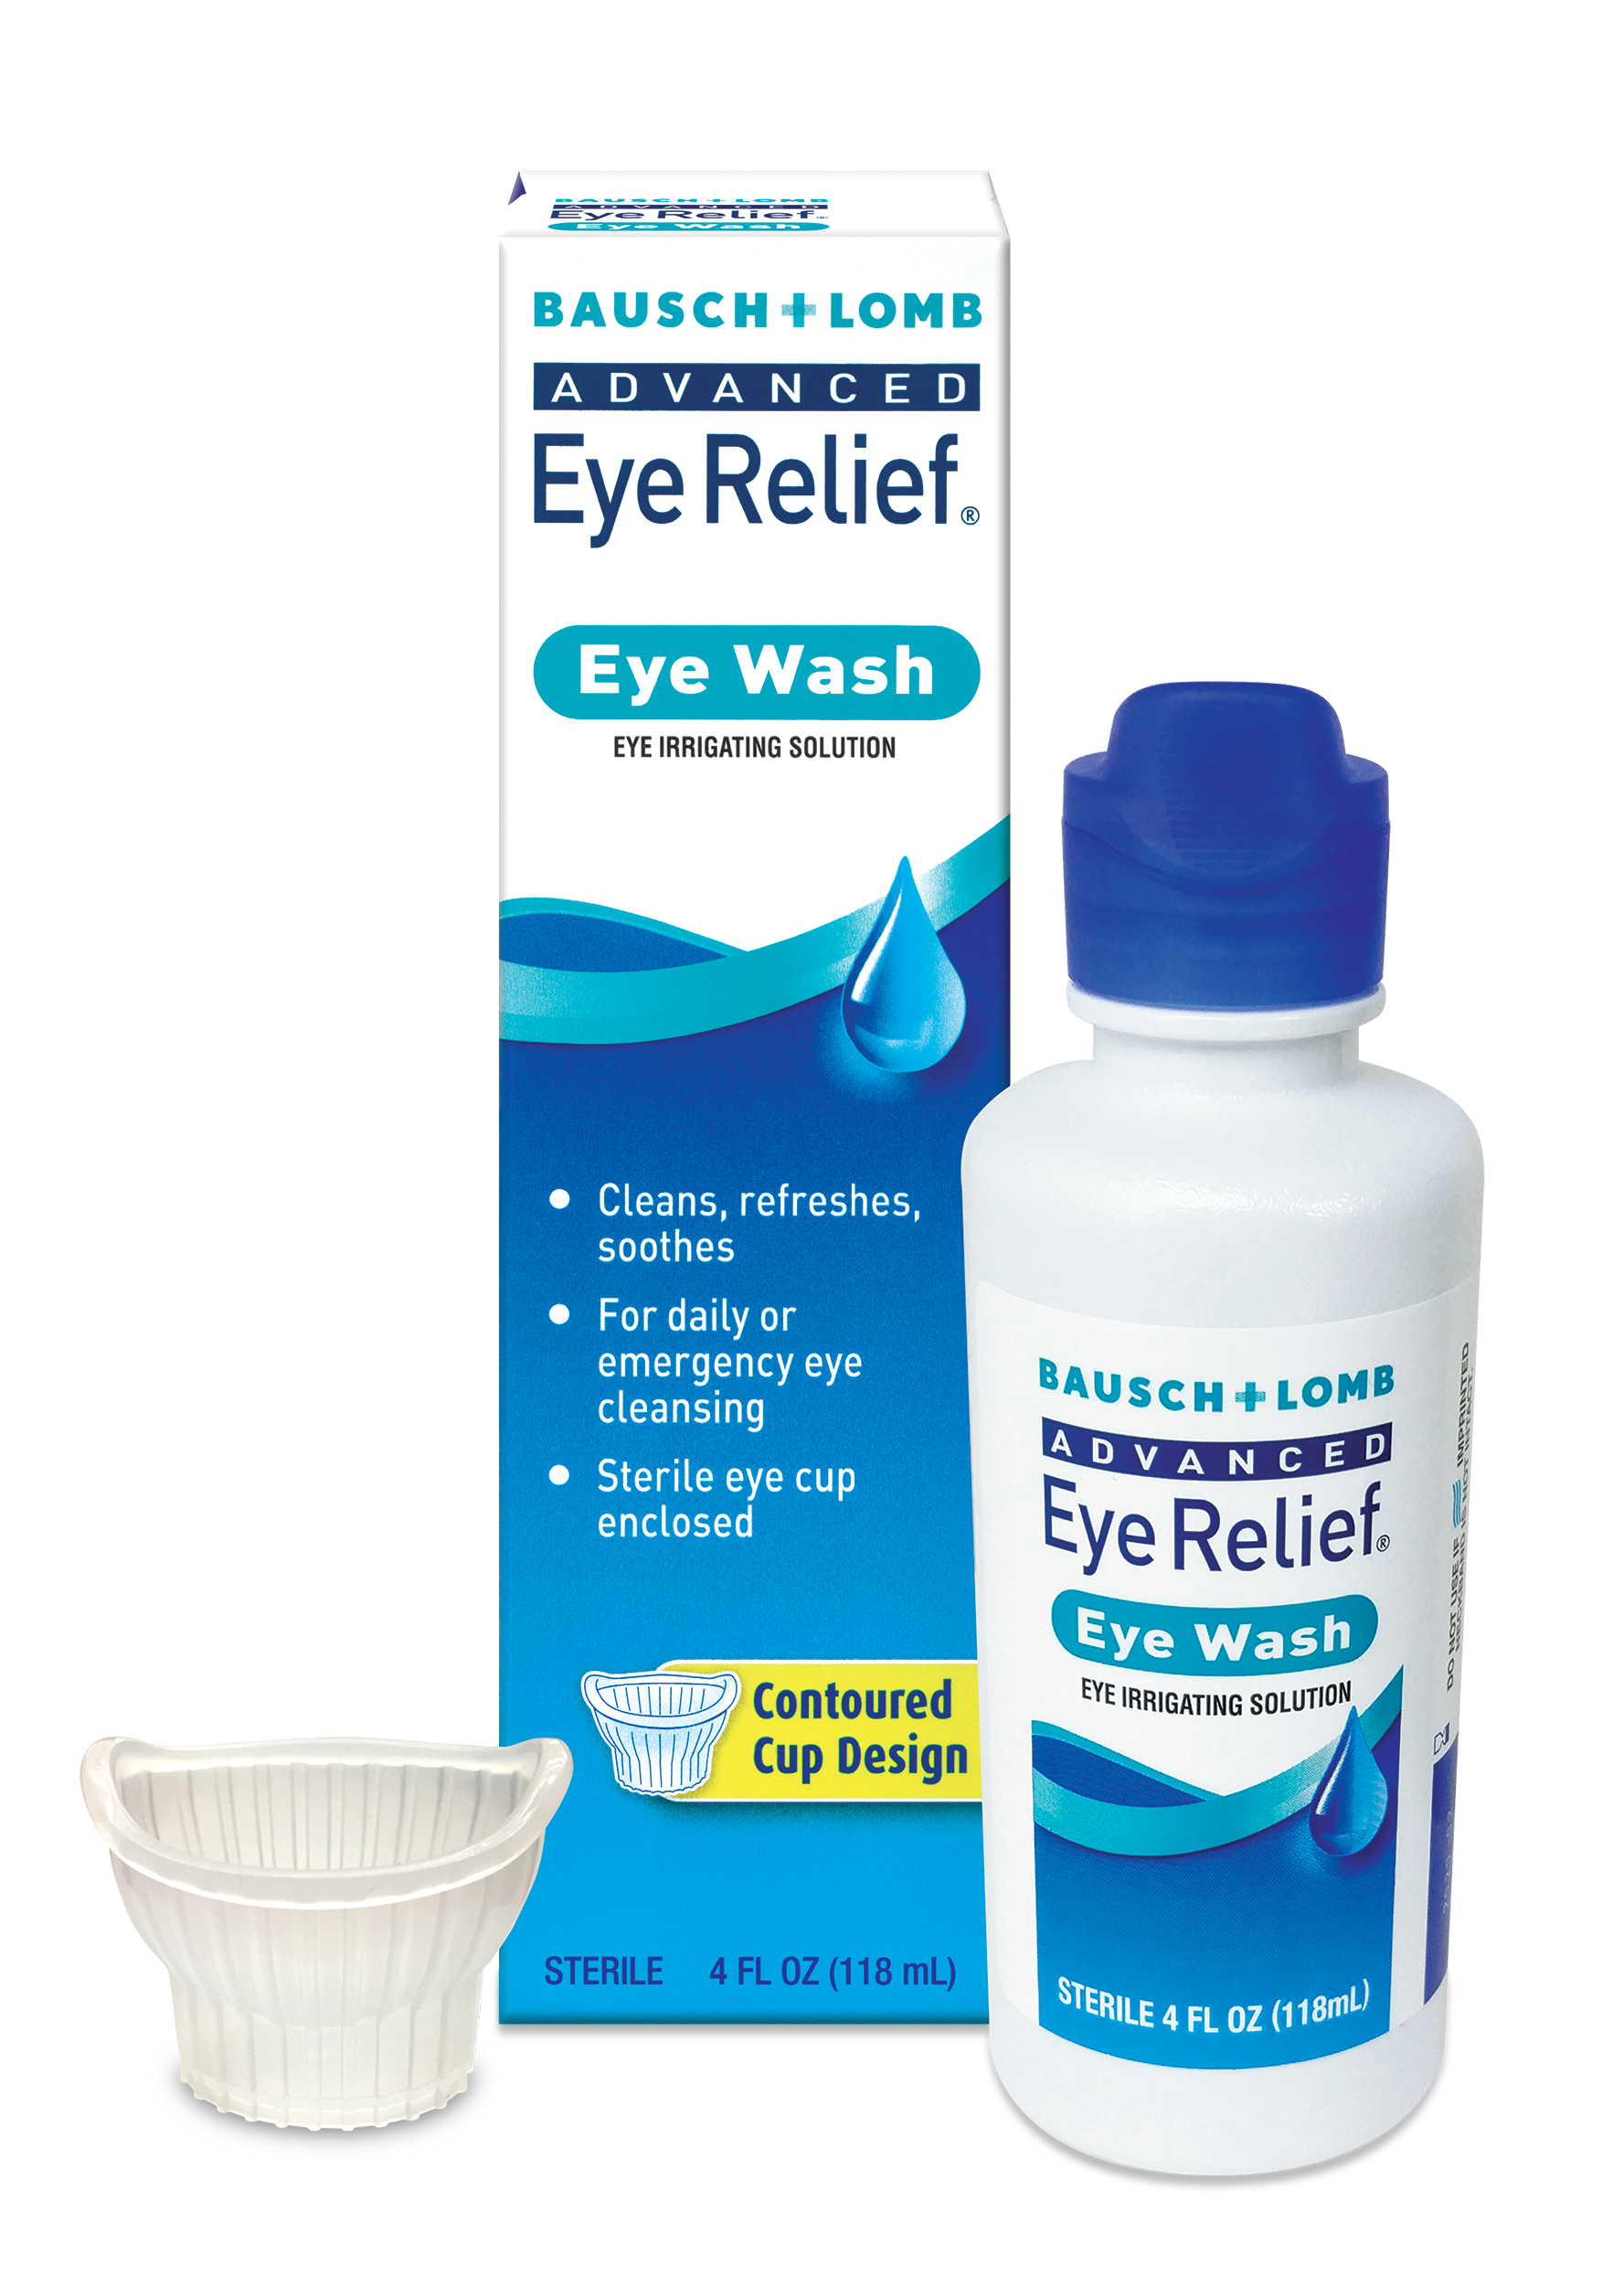 Eye Irrigating Solution – Daily or emergency eye cleansing – Advanced Eye  Relief Eye Wash : Bausch + Lomb